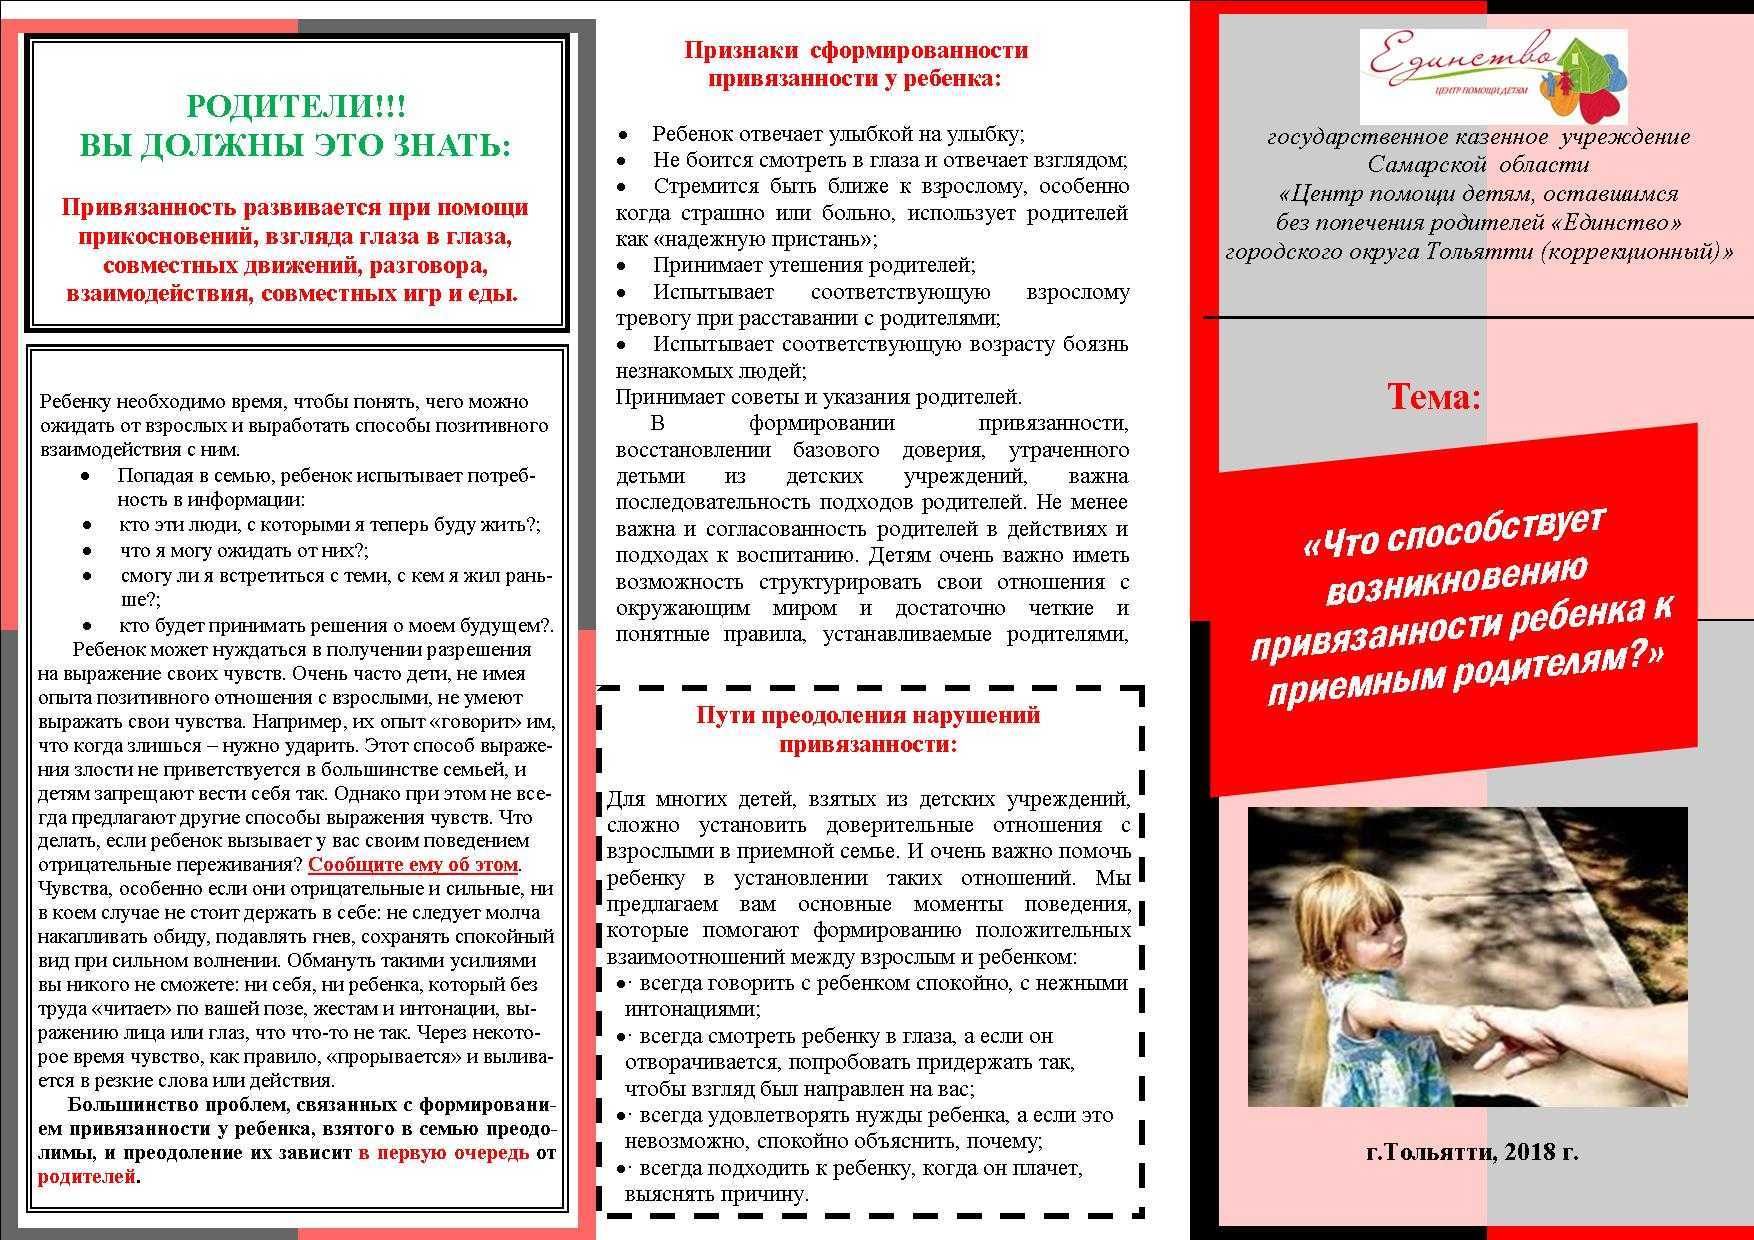 Людмила петрановская: перевернутая привязанность, или когда дети «усыновляют» родителей